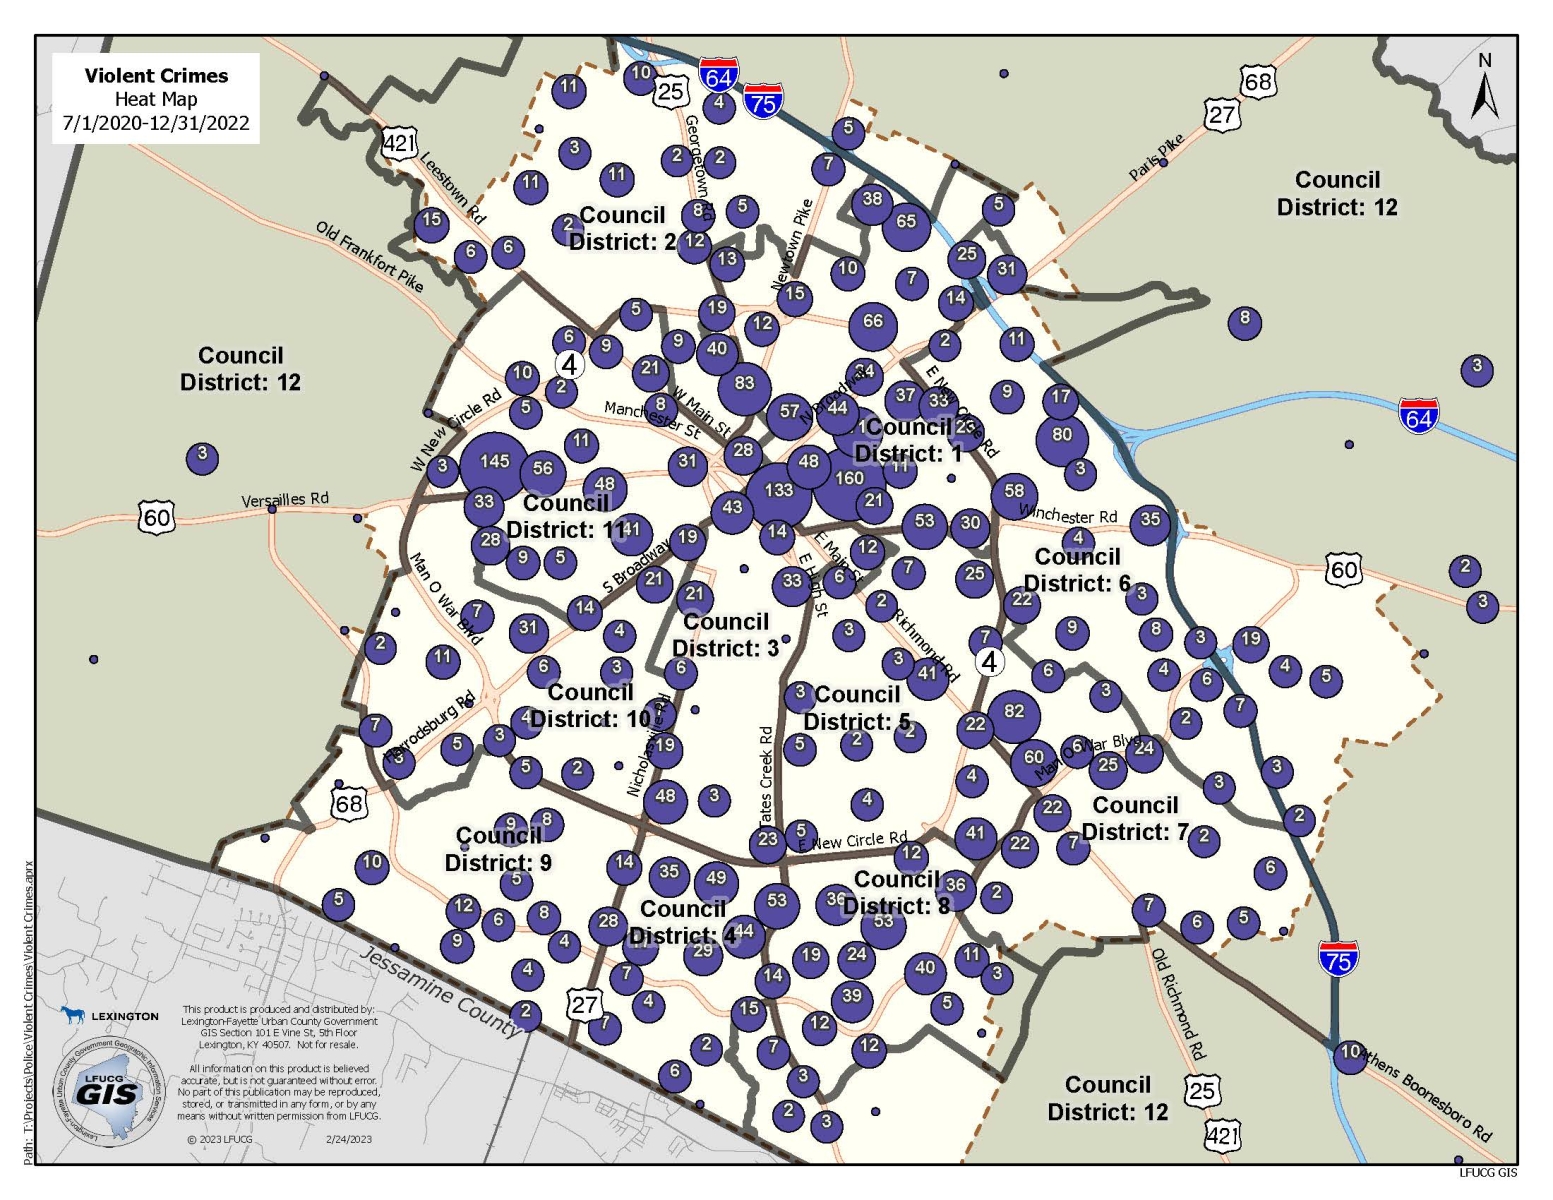 Violent Crime Cluster Map by Council District